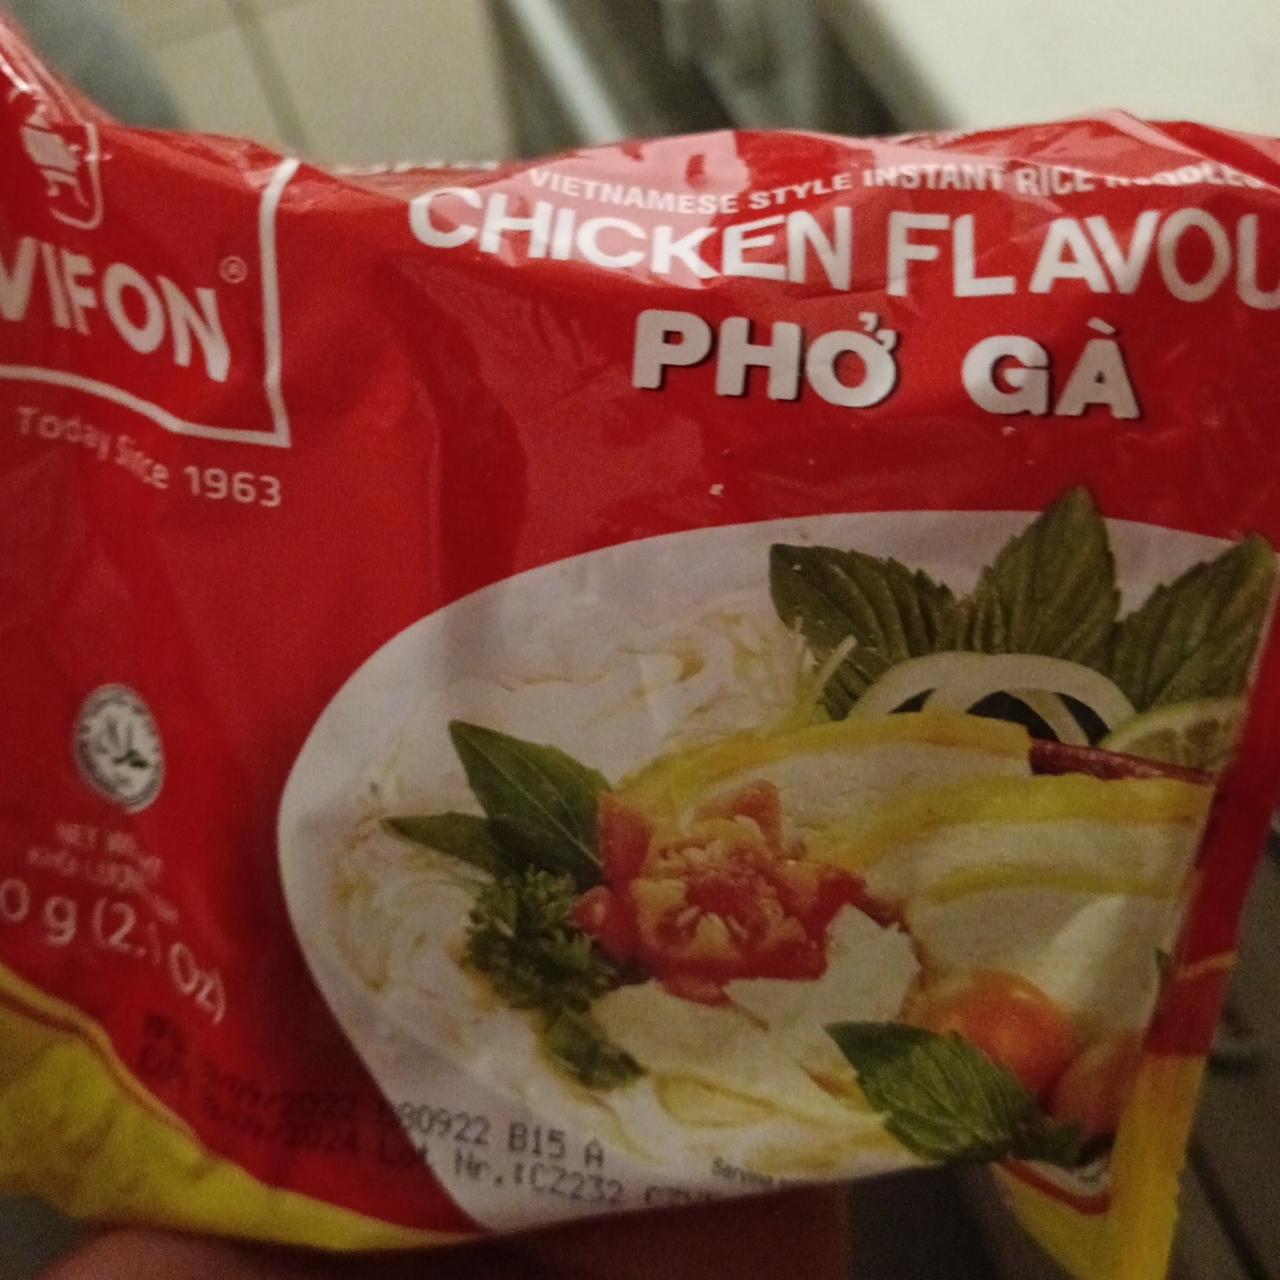 Фото - Лапша быстрого приготовления рисовая Pho Ga со вкусом курицы Vifon